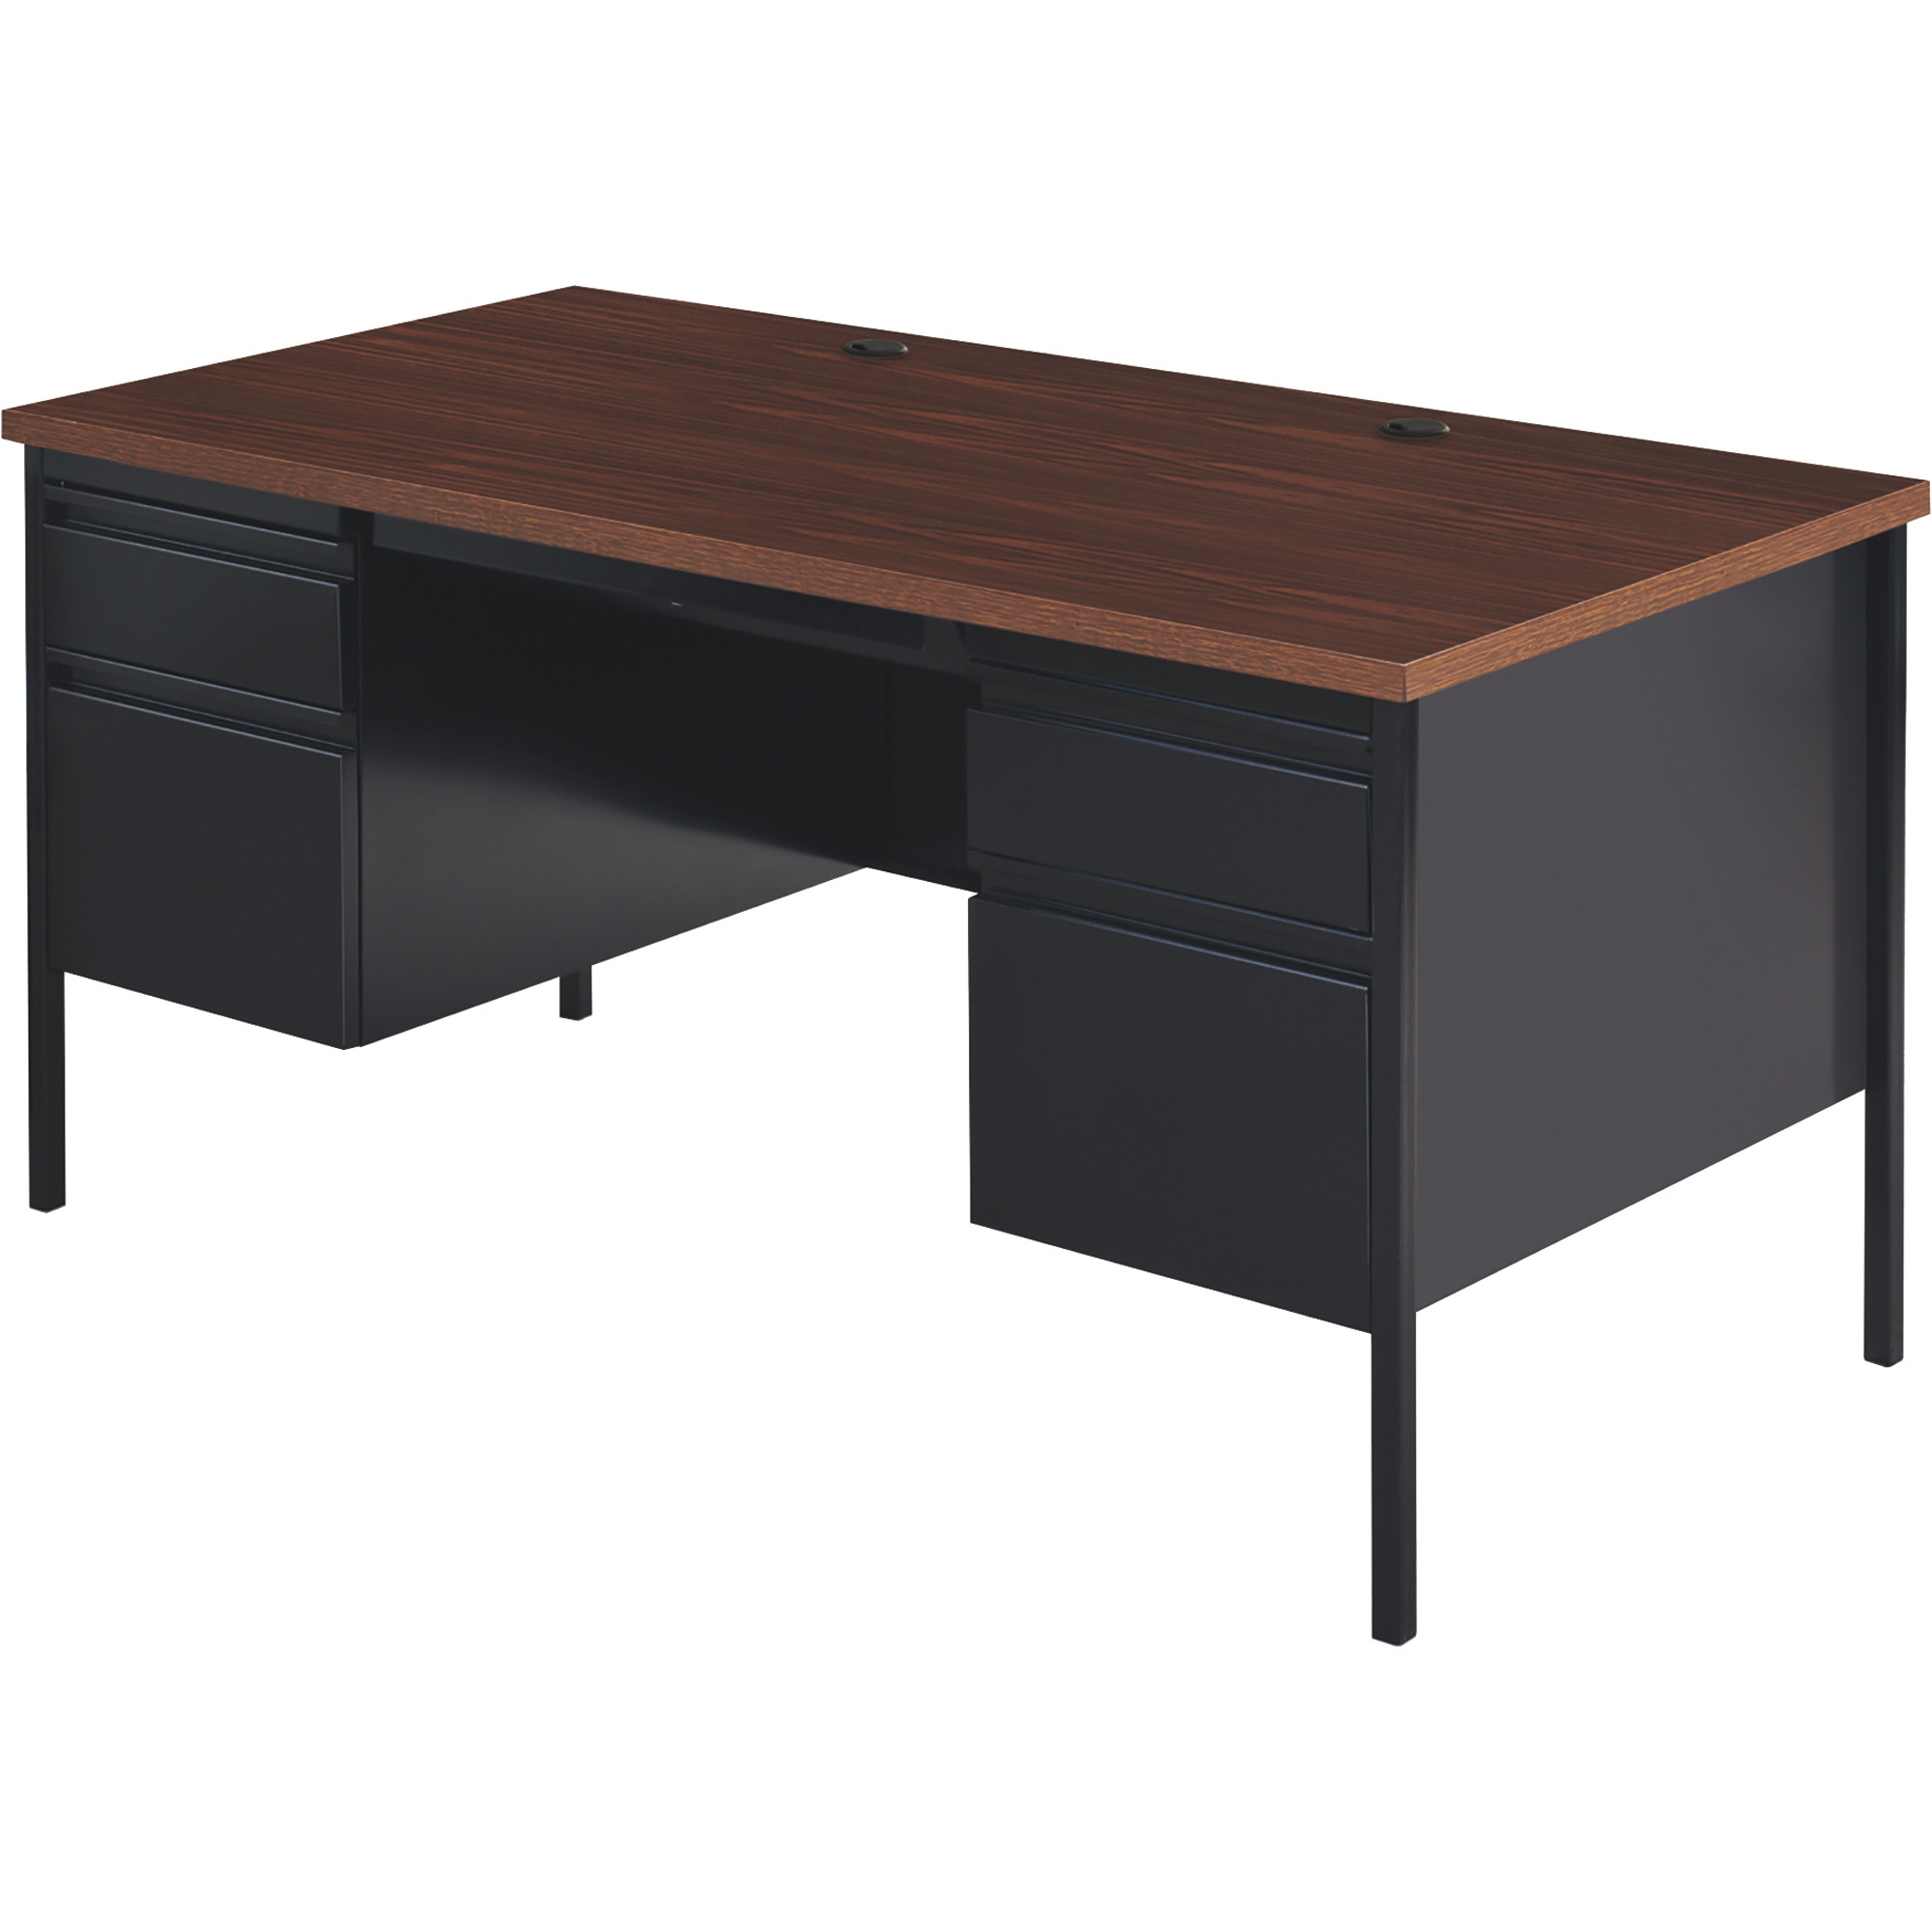 Traditional Pedestal Desk — Black/Walnut, 66Inch W x 30Inch D x 29 1/2Inch H, Model - Hirsh Industries 20101